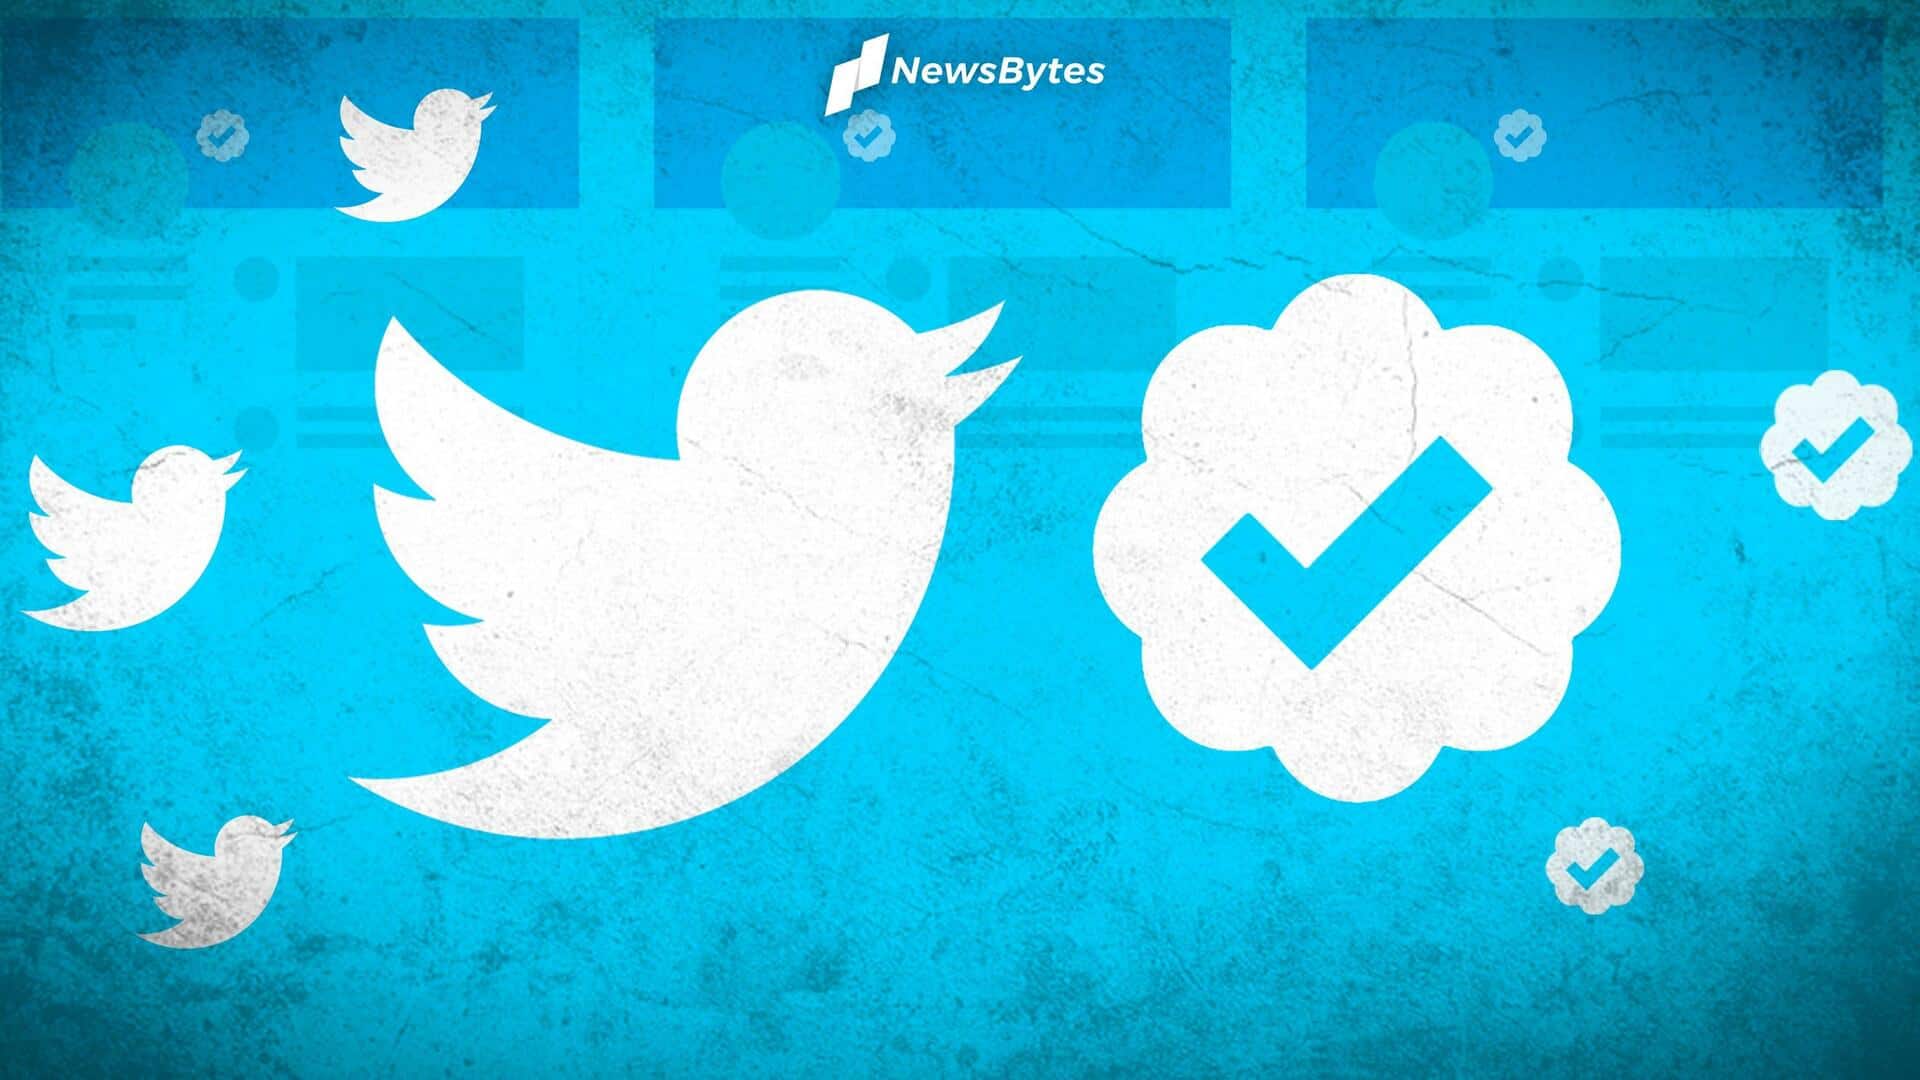 ट्विटर ब्लू सब्सक्रिप्शन अब दुनियाभर में उपलब्ध, जानिए इसके फायदे 